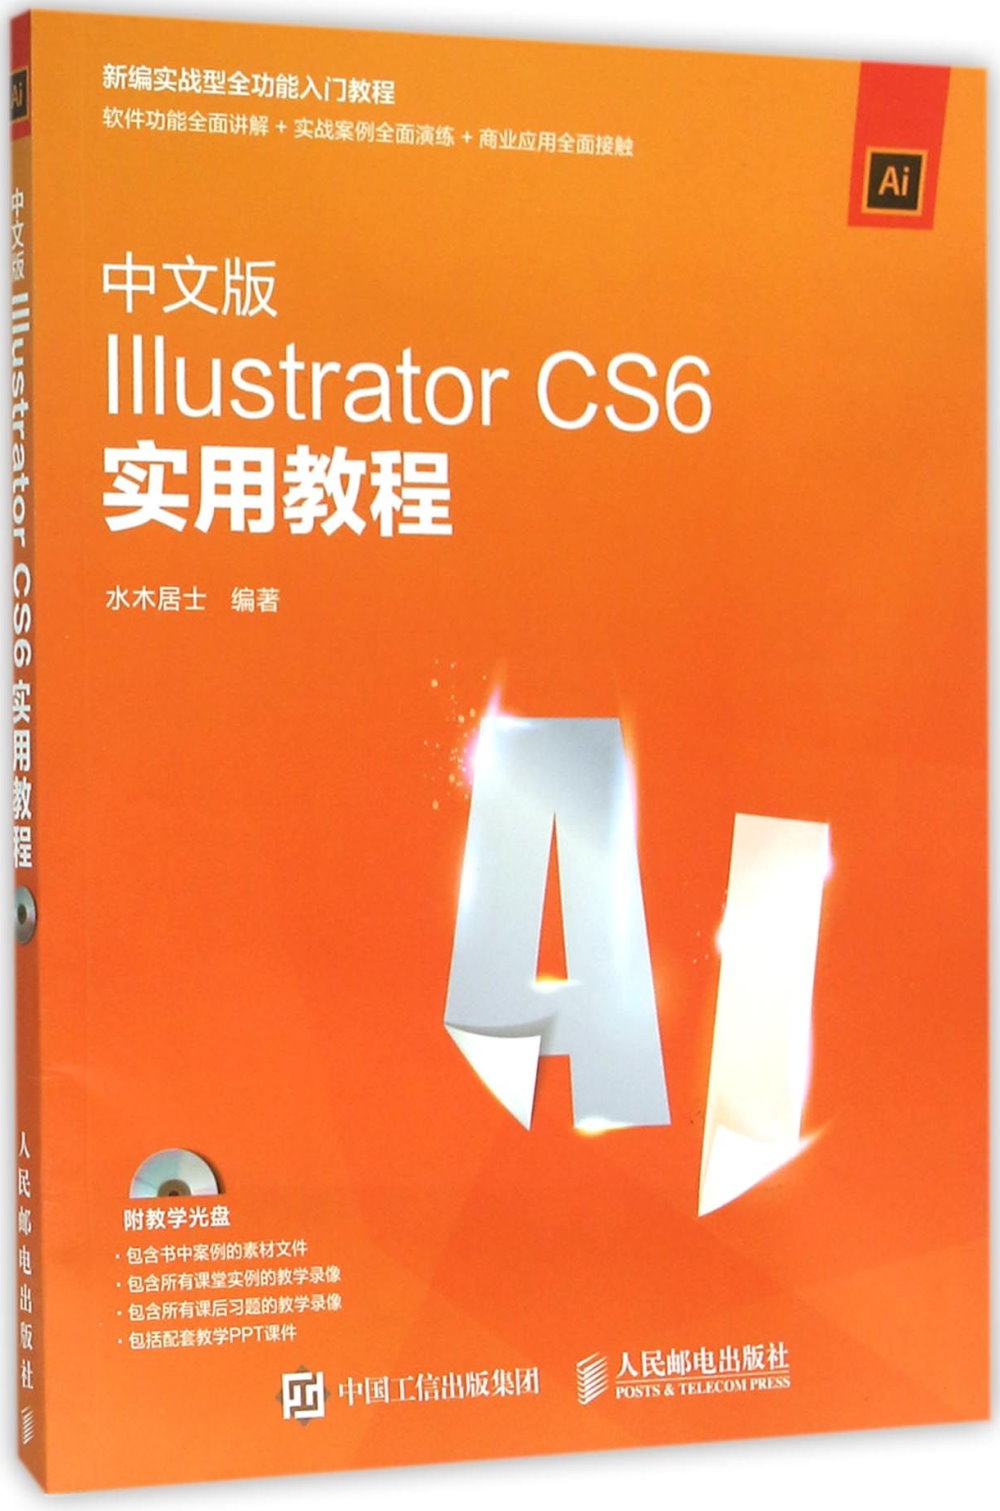 中文版Illustrator CS6實用教程